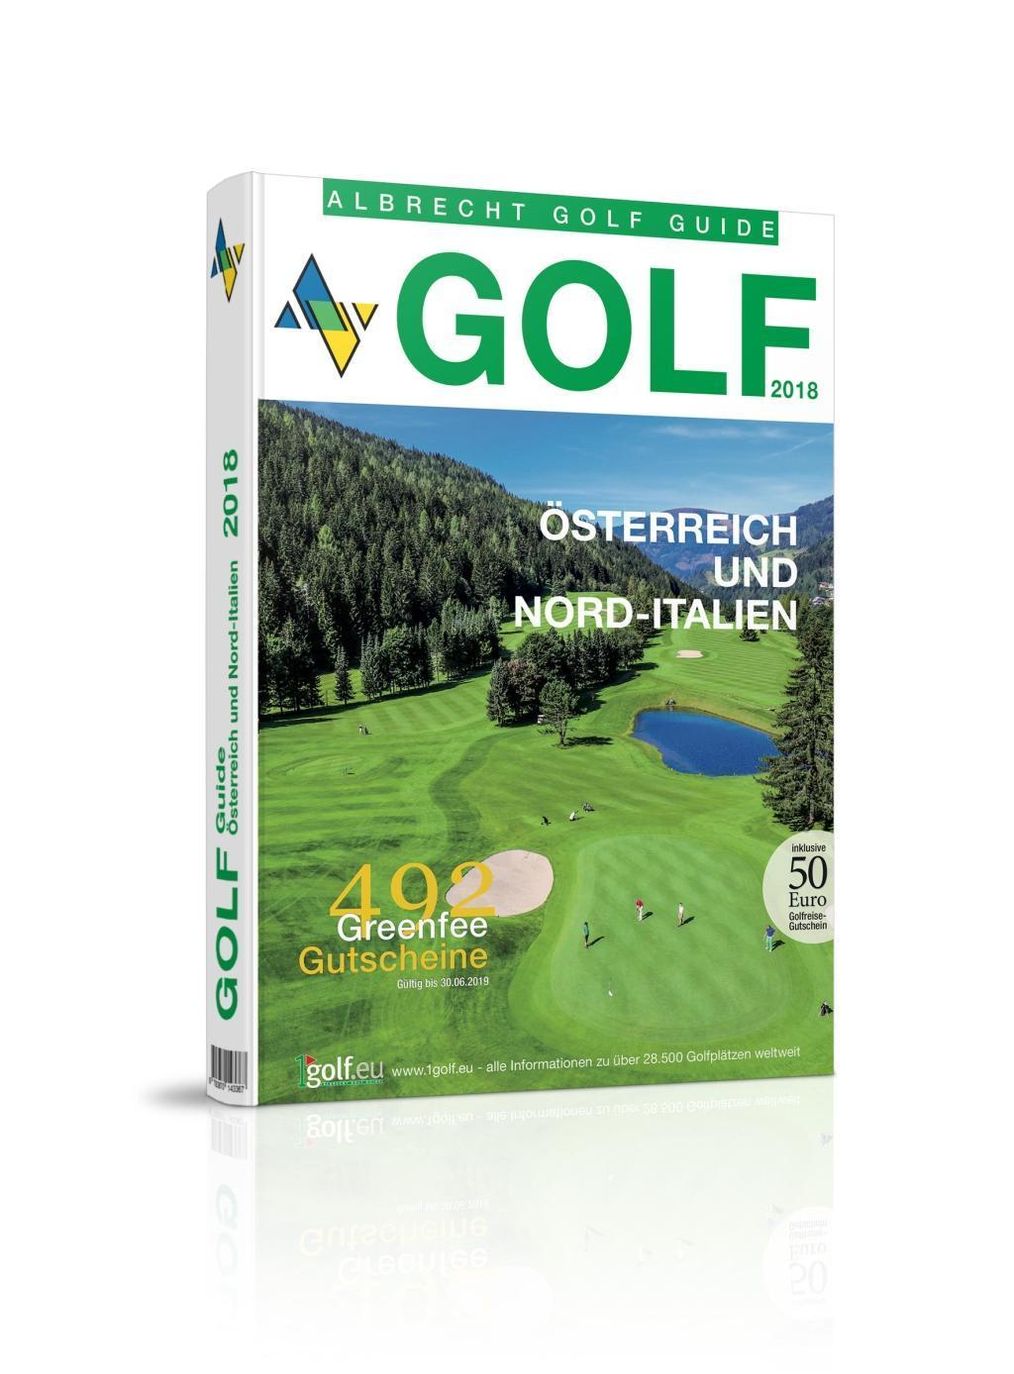 Albrecht Golf Guide Österreich und Nord-Italien 2018 inklusive  Gutscheinbuch | Weltbild.ch